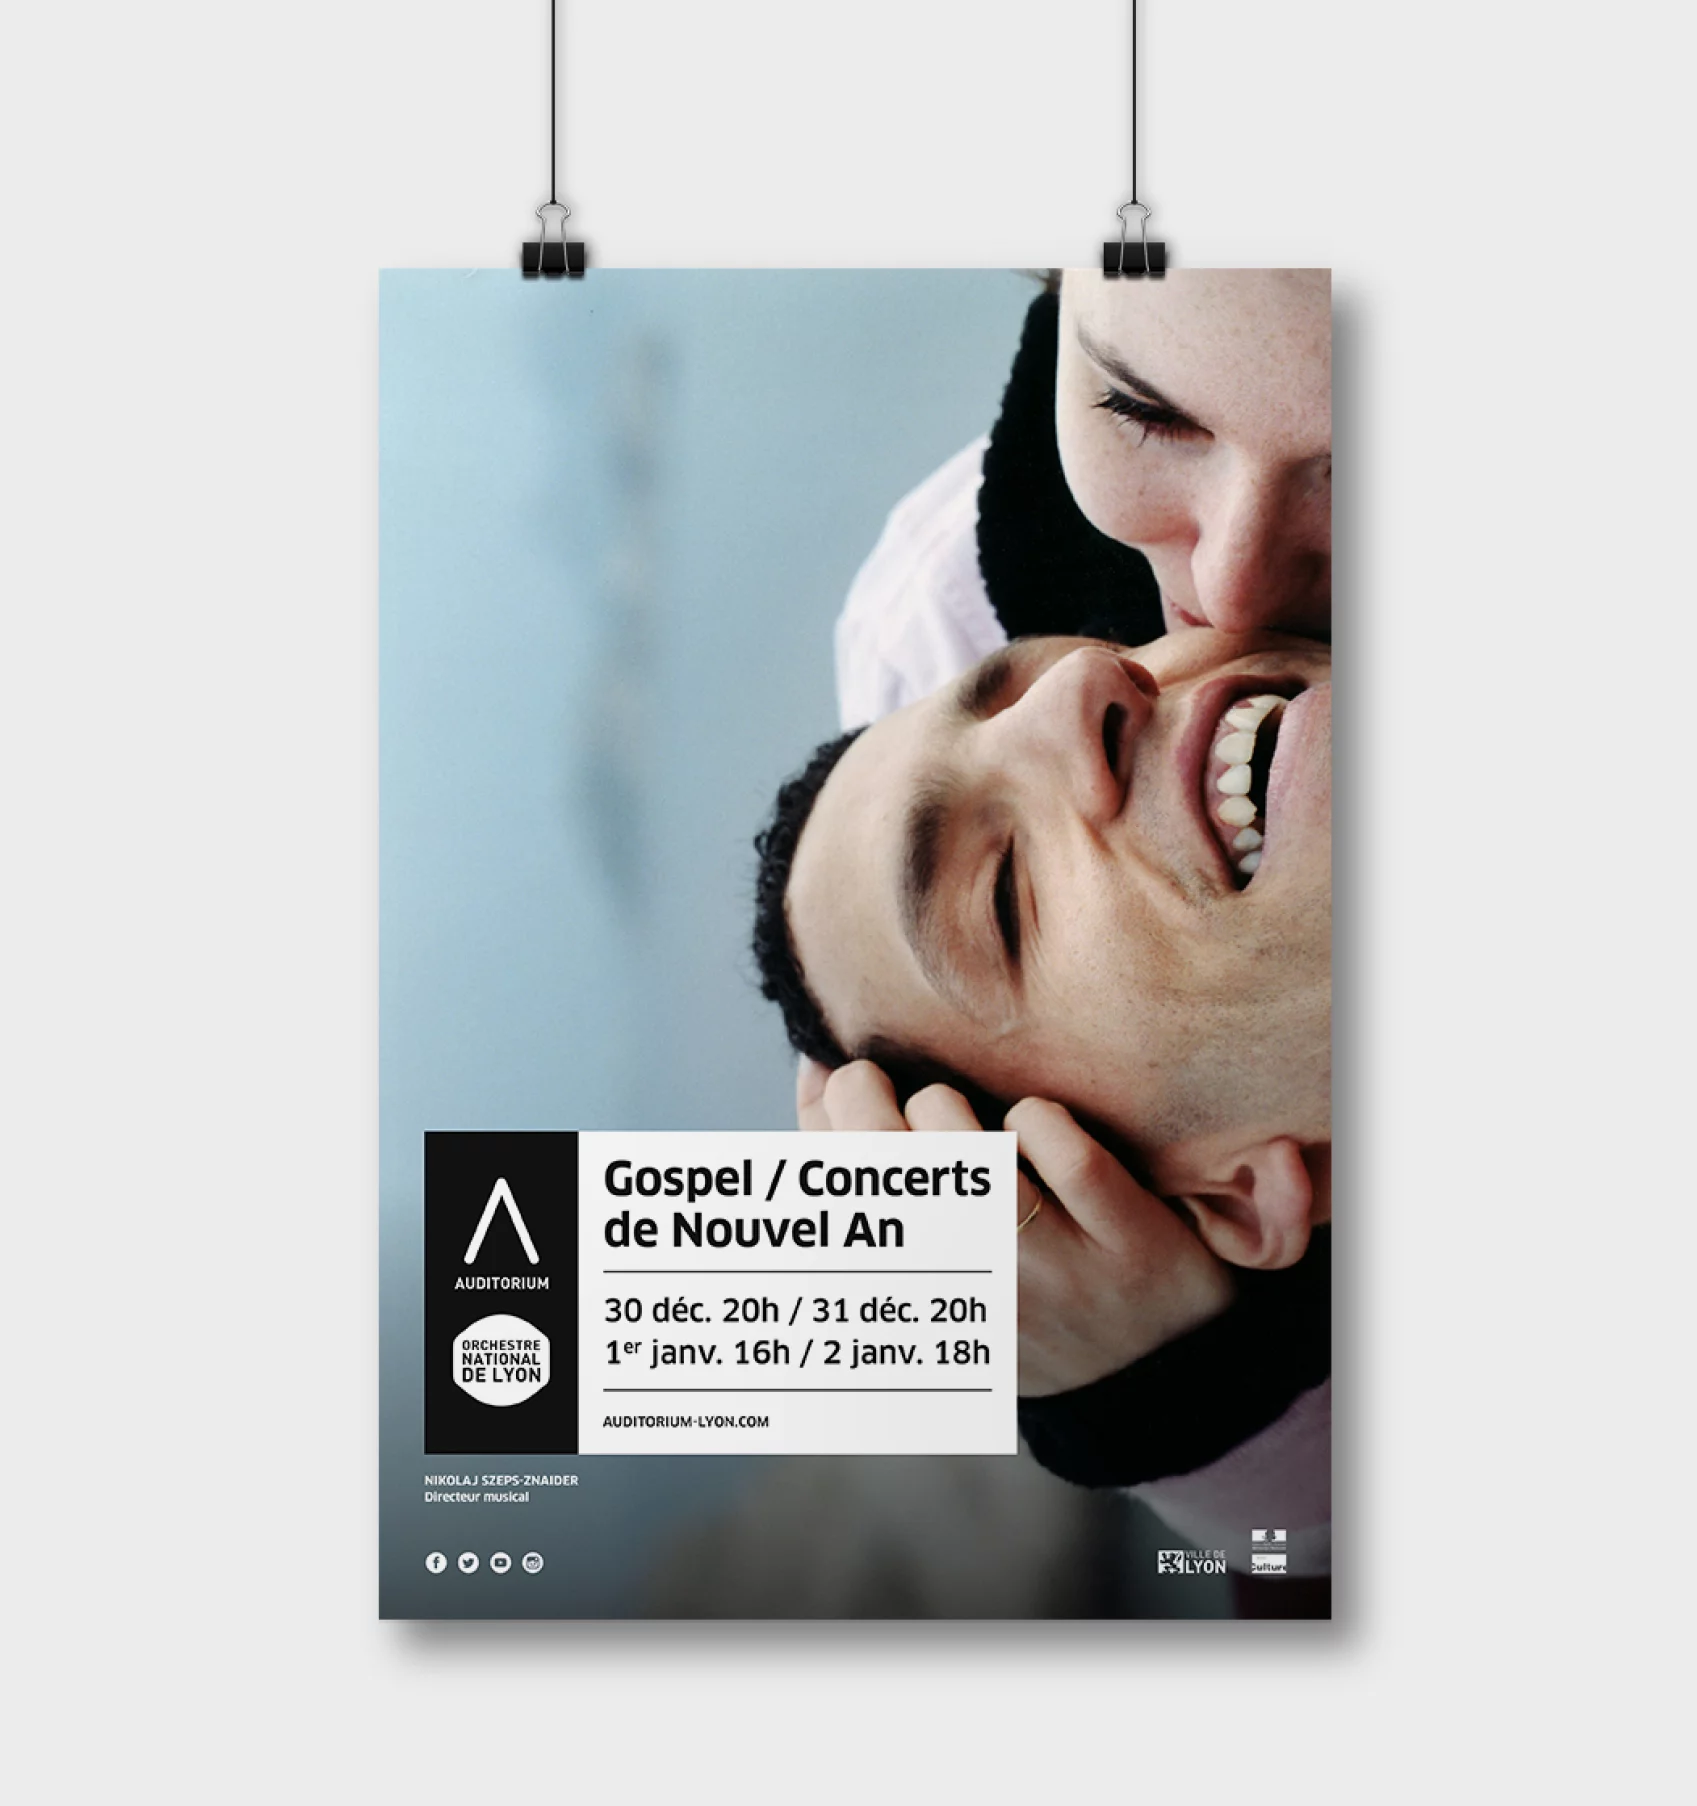 Autre version de l'affiche, sans slogan, avec un grand visuel représentant un couple souriant en extérieur